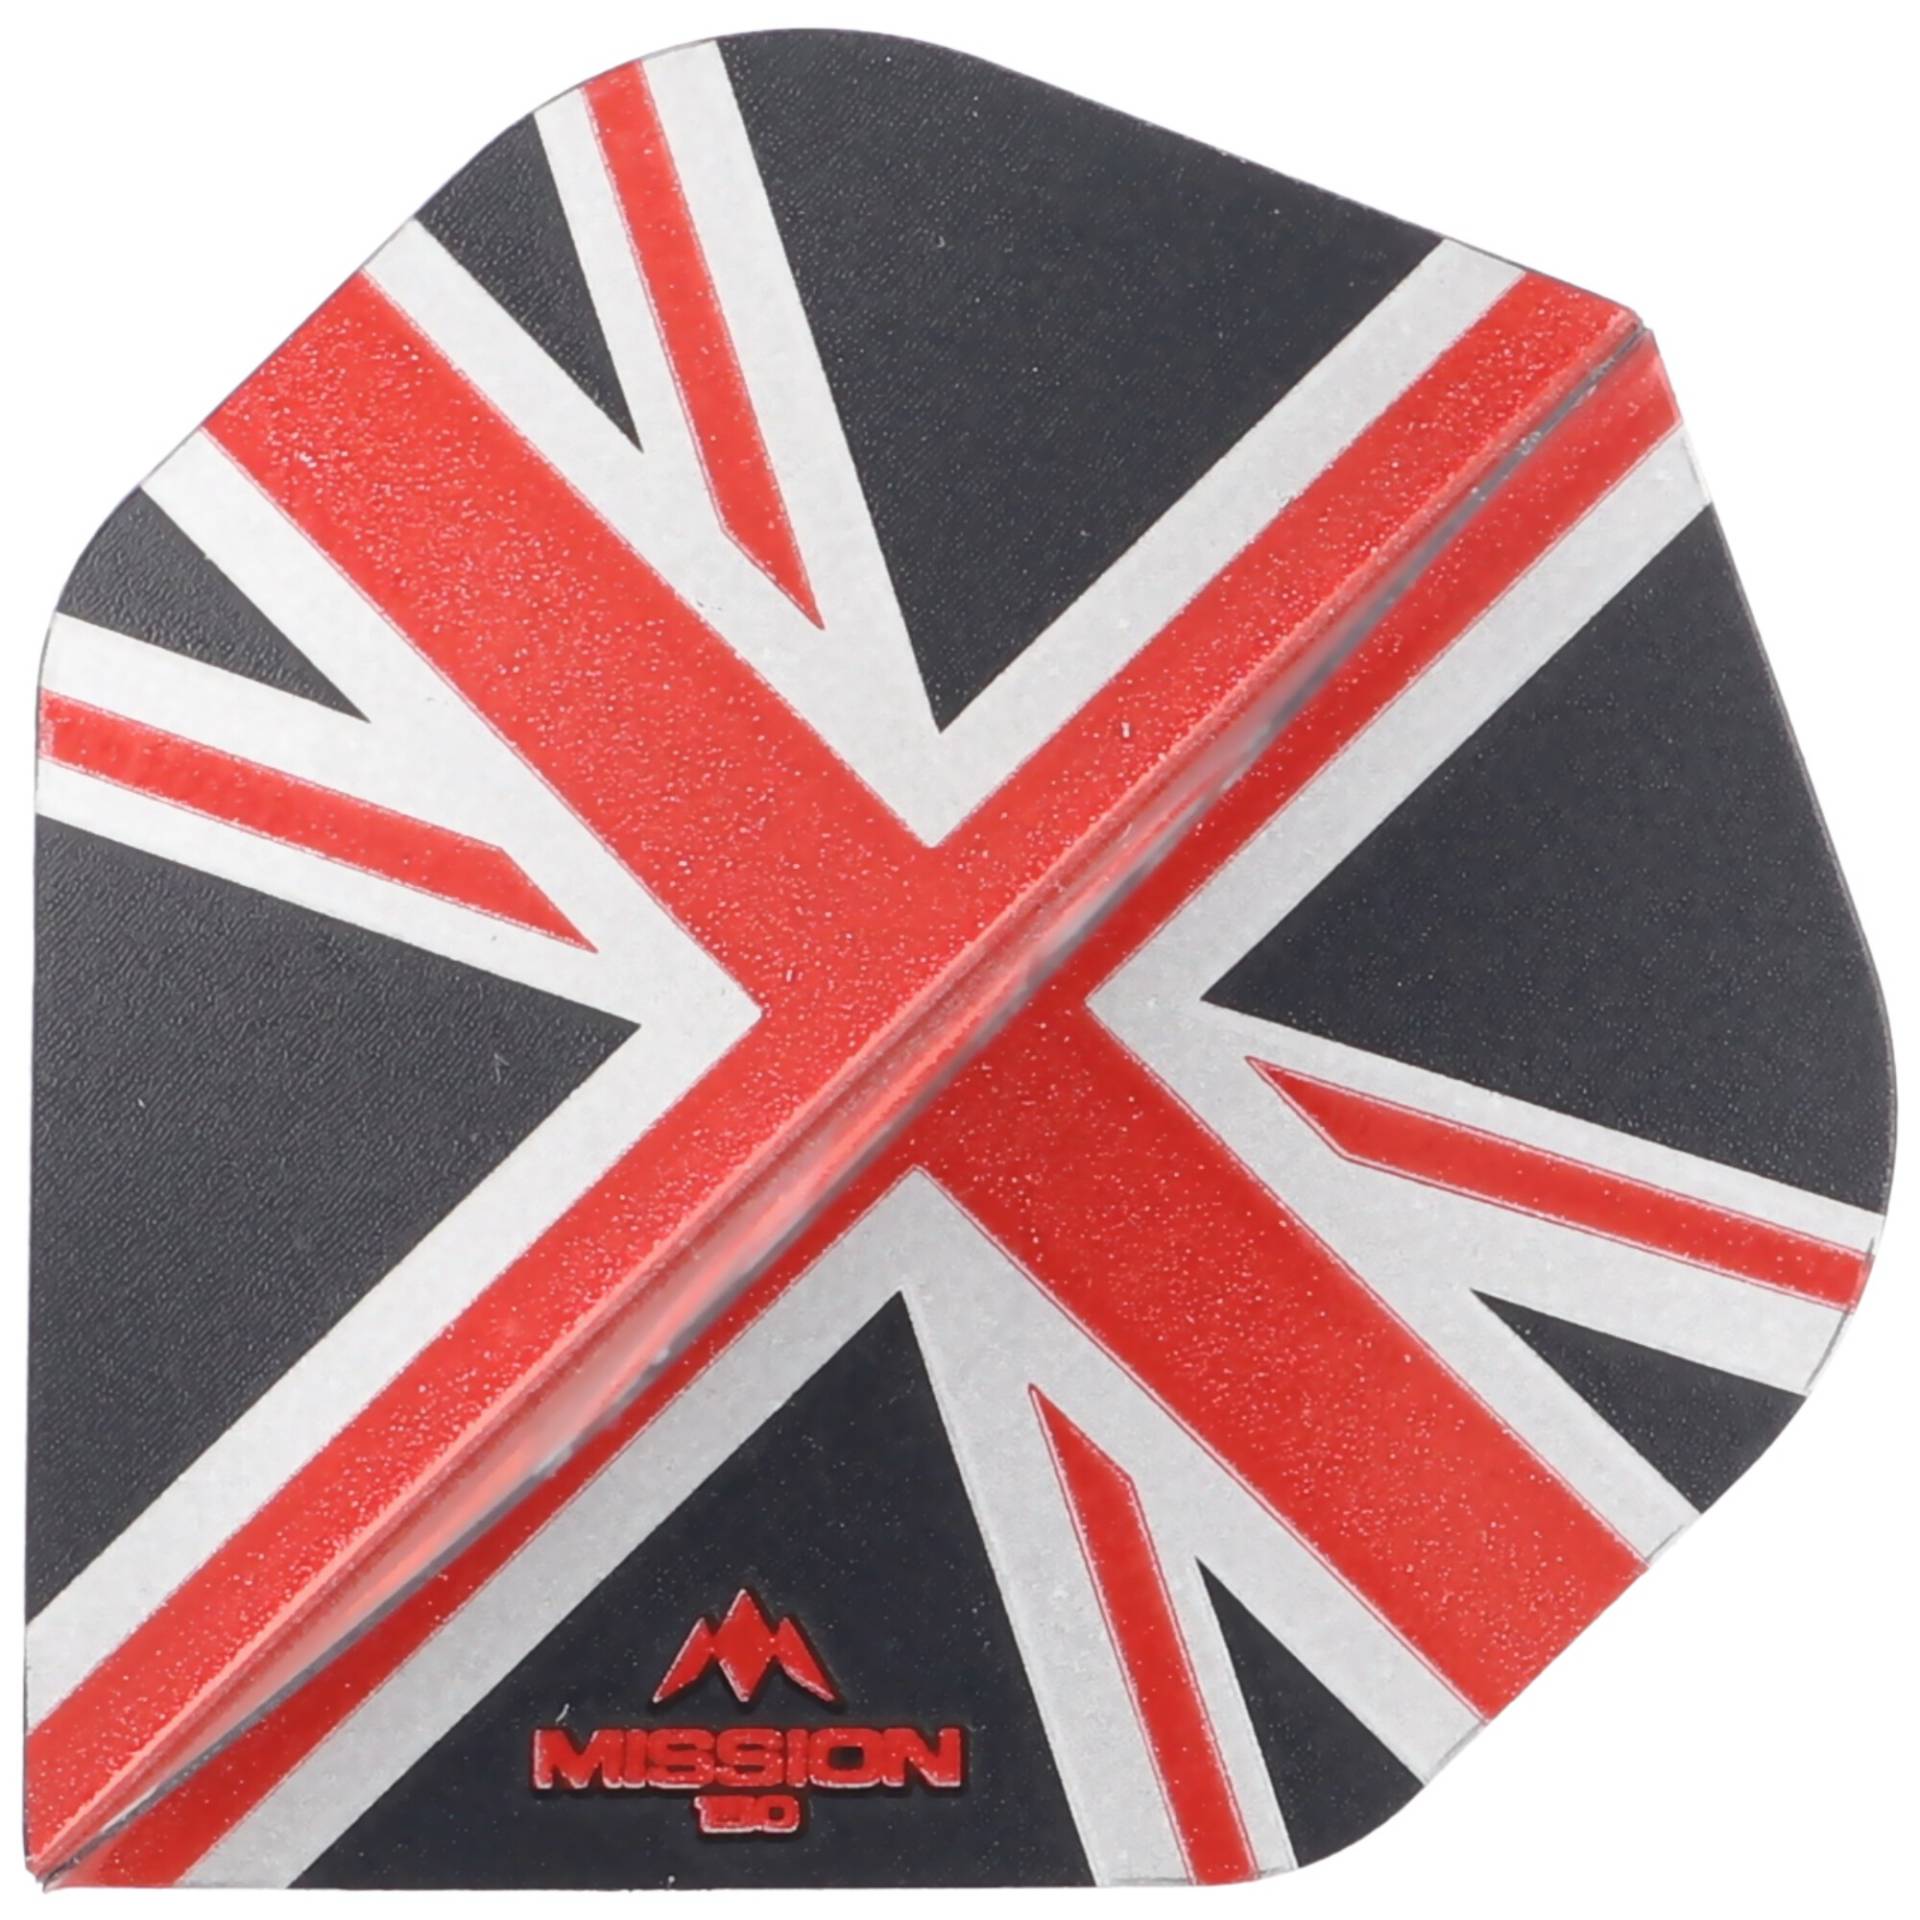 Mission Alliance Union Jack Flights, 150 Micron, No2, 3 Stück, schwarz&rot von Mission